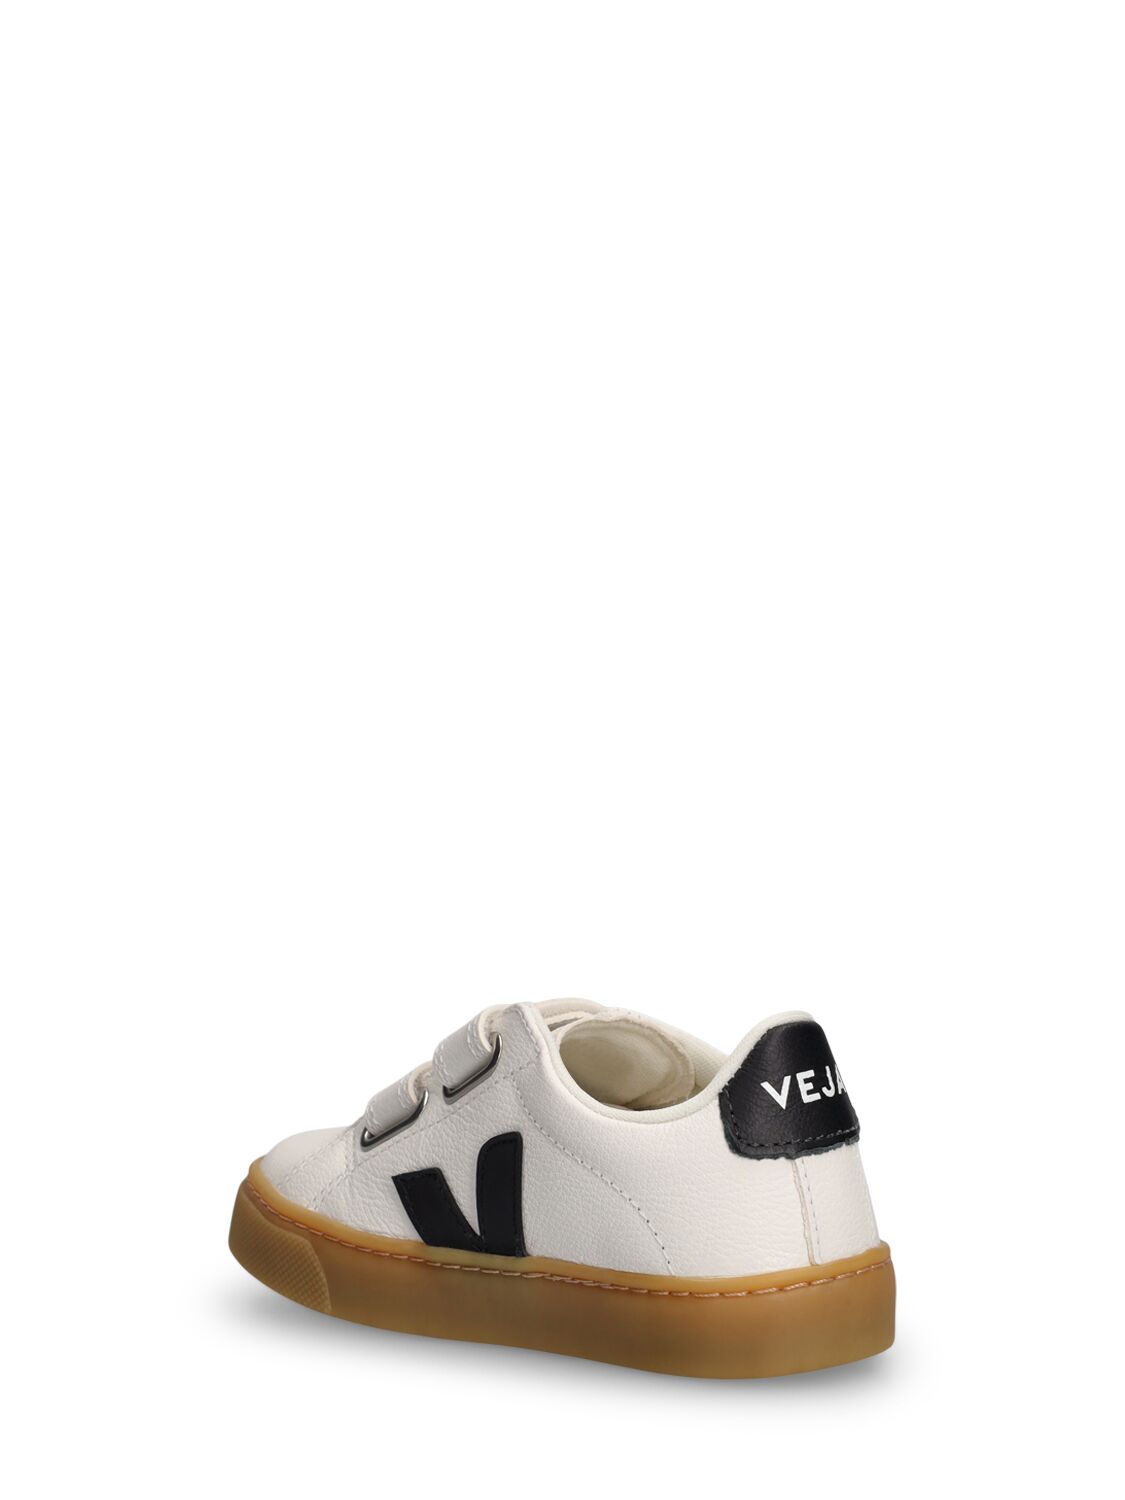 Shop Veja Esplar Chrome-free Leather Sneakers In White,black